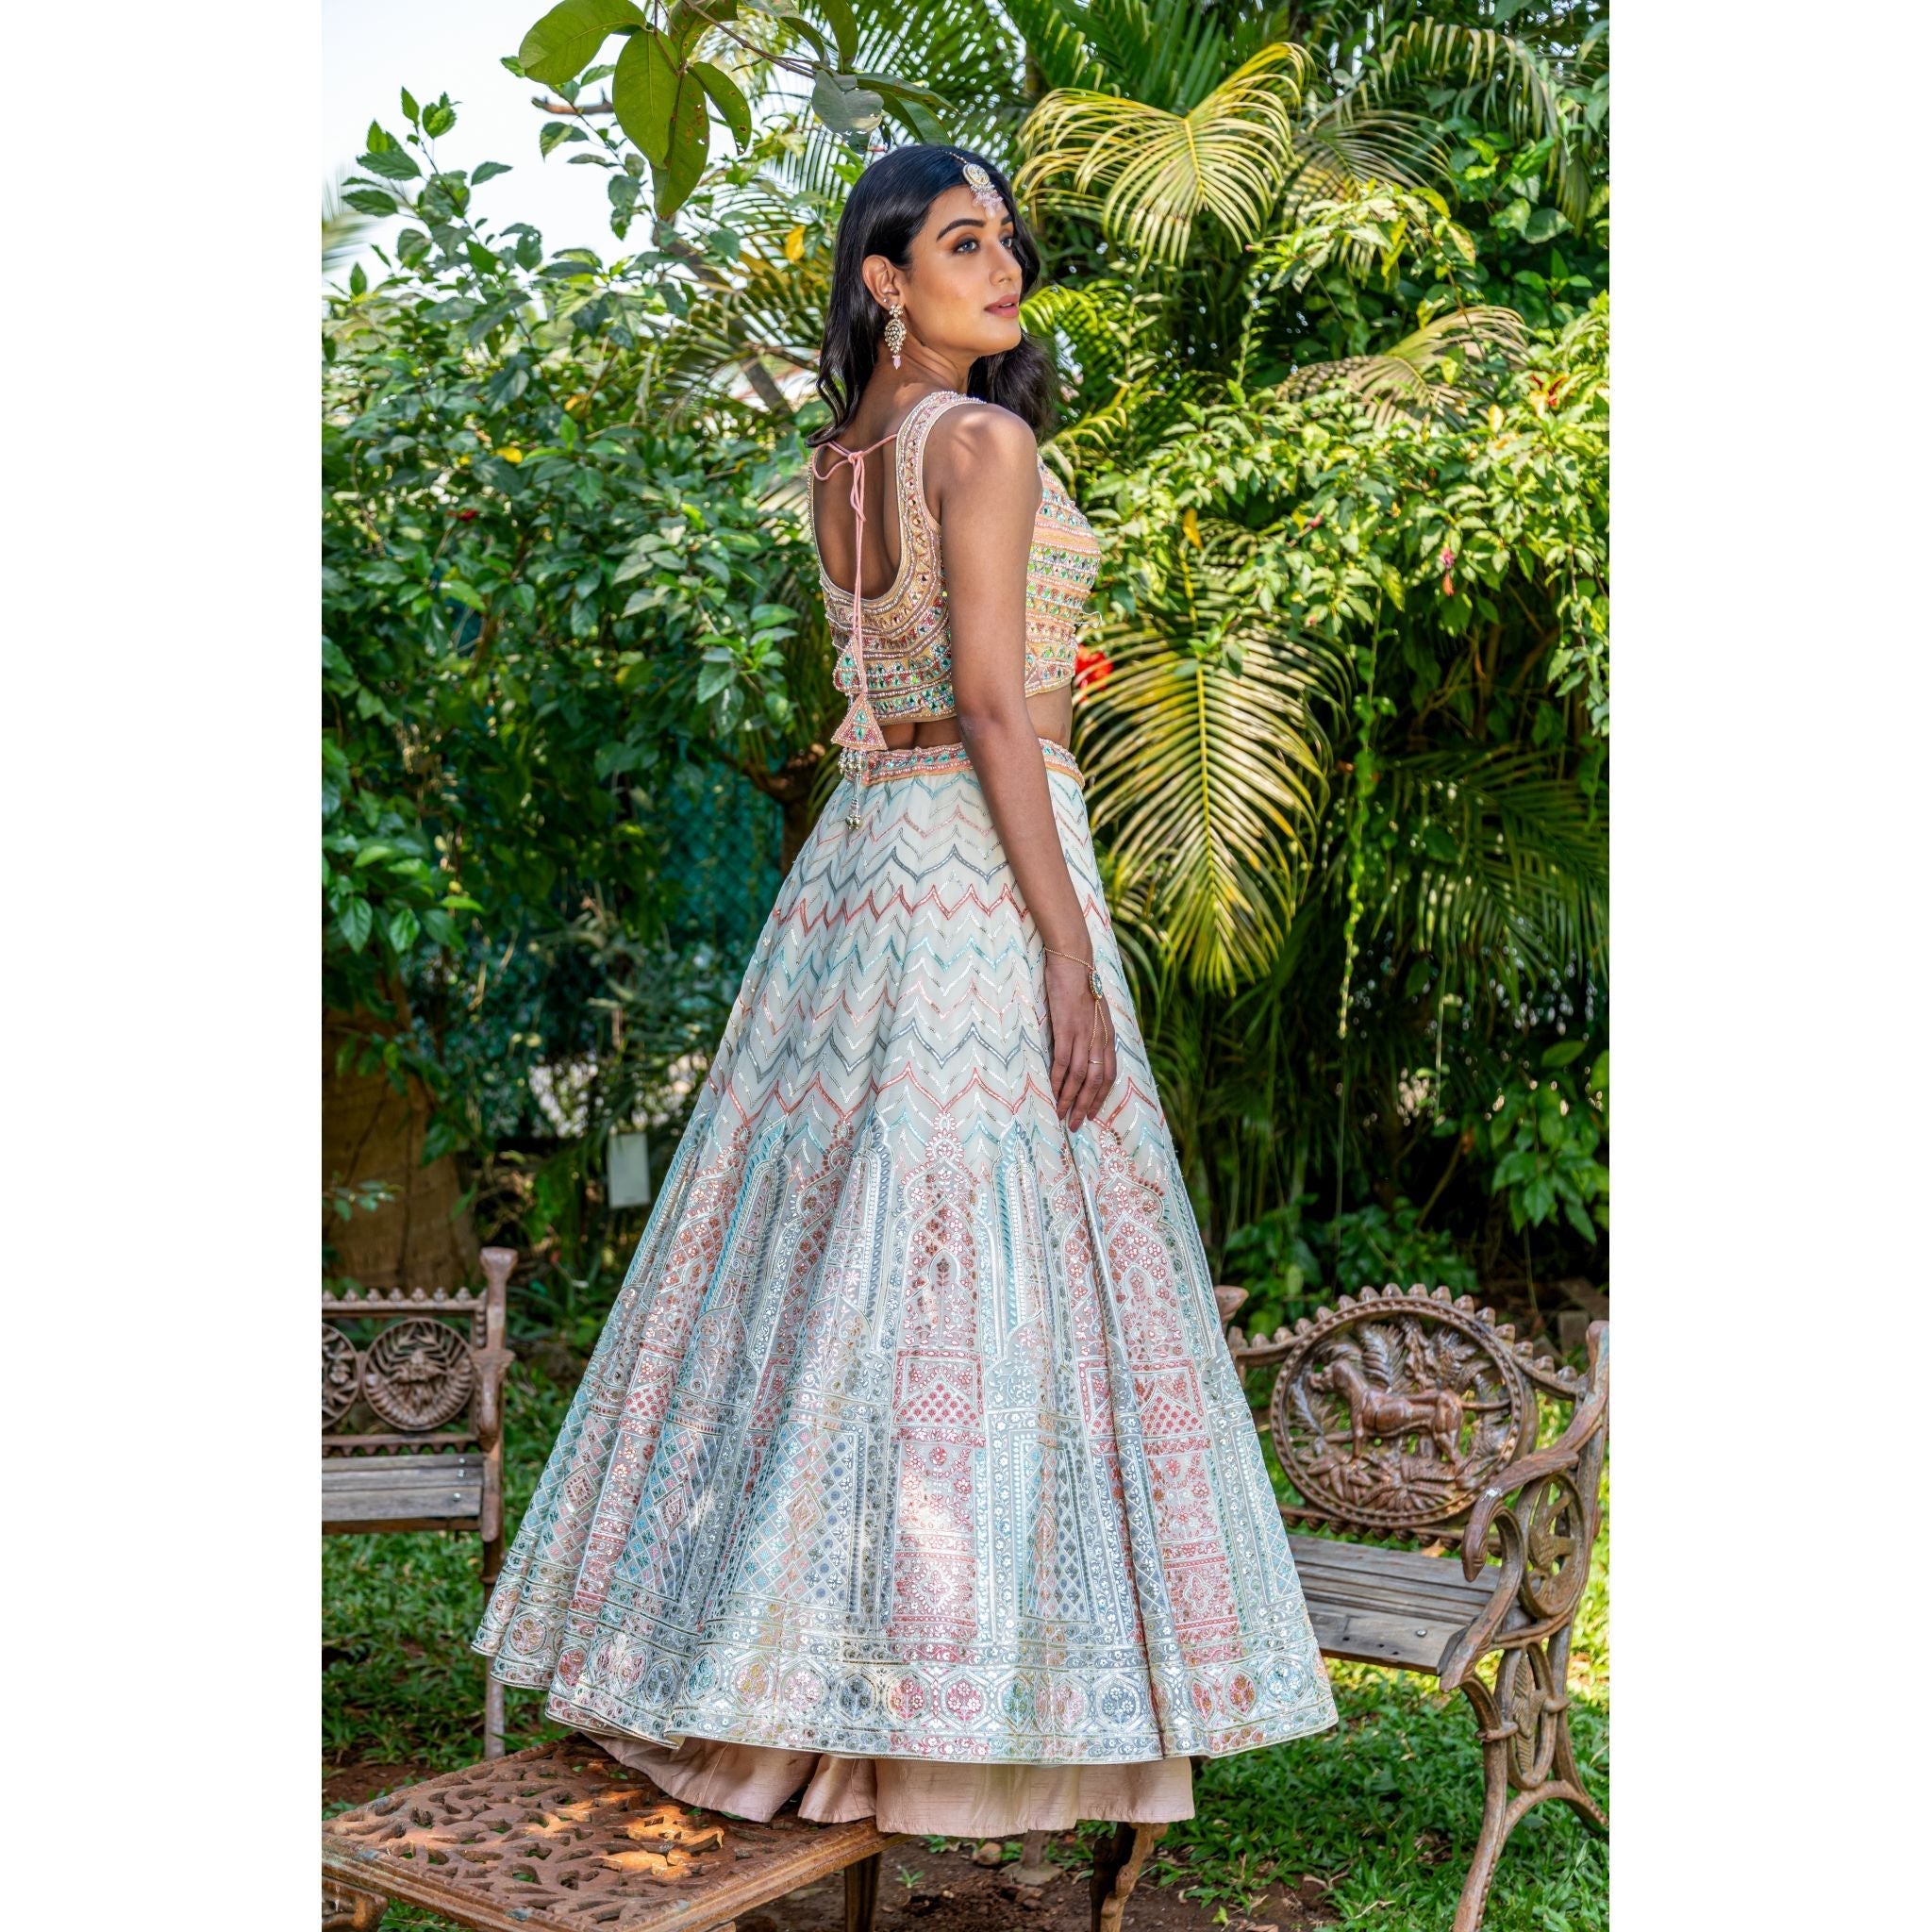 Peach And Cream Aztec Lehenga Set - Indian Designer Bridal Wedding Outfit